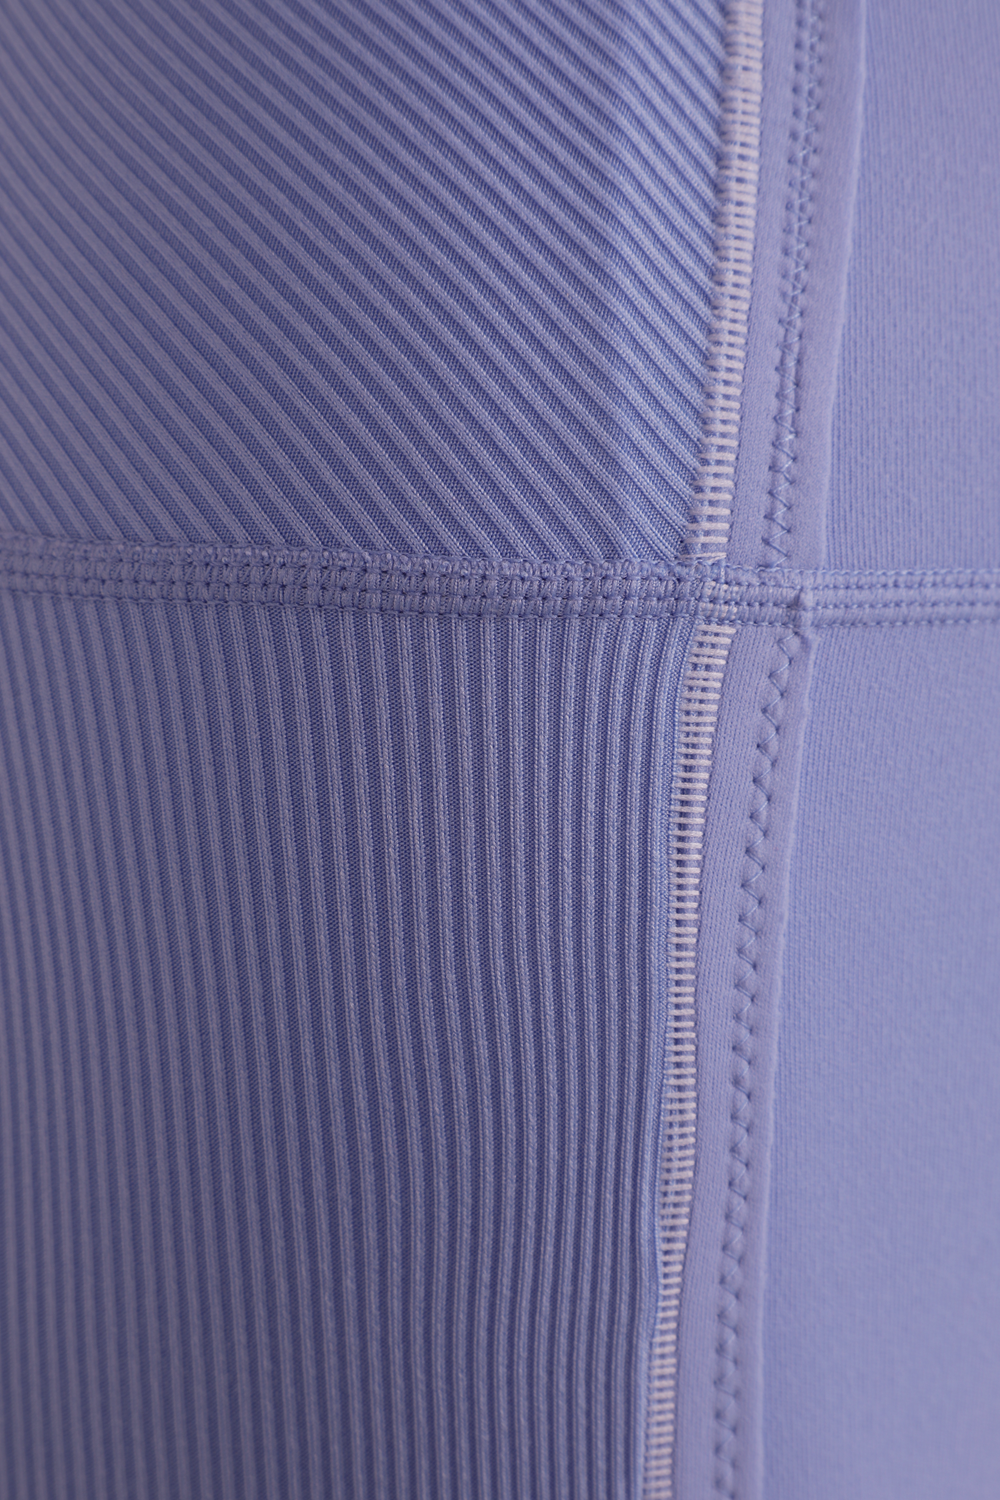 מכנסי טייץ יוגה לוקס דריי פיט בגוון כחול NIKE